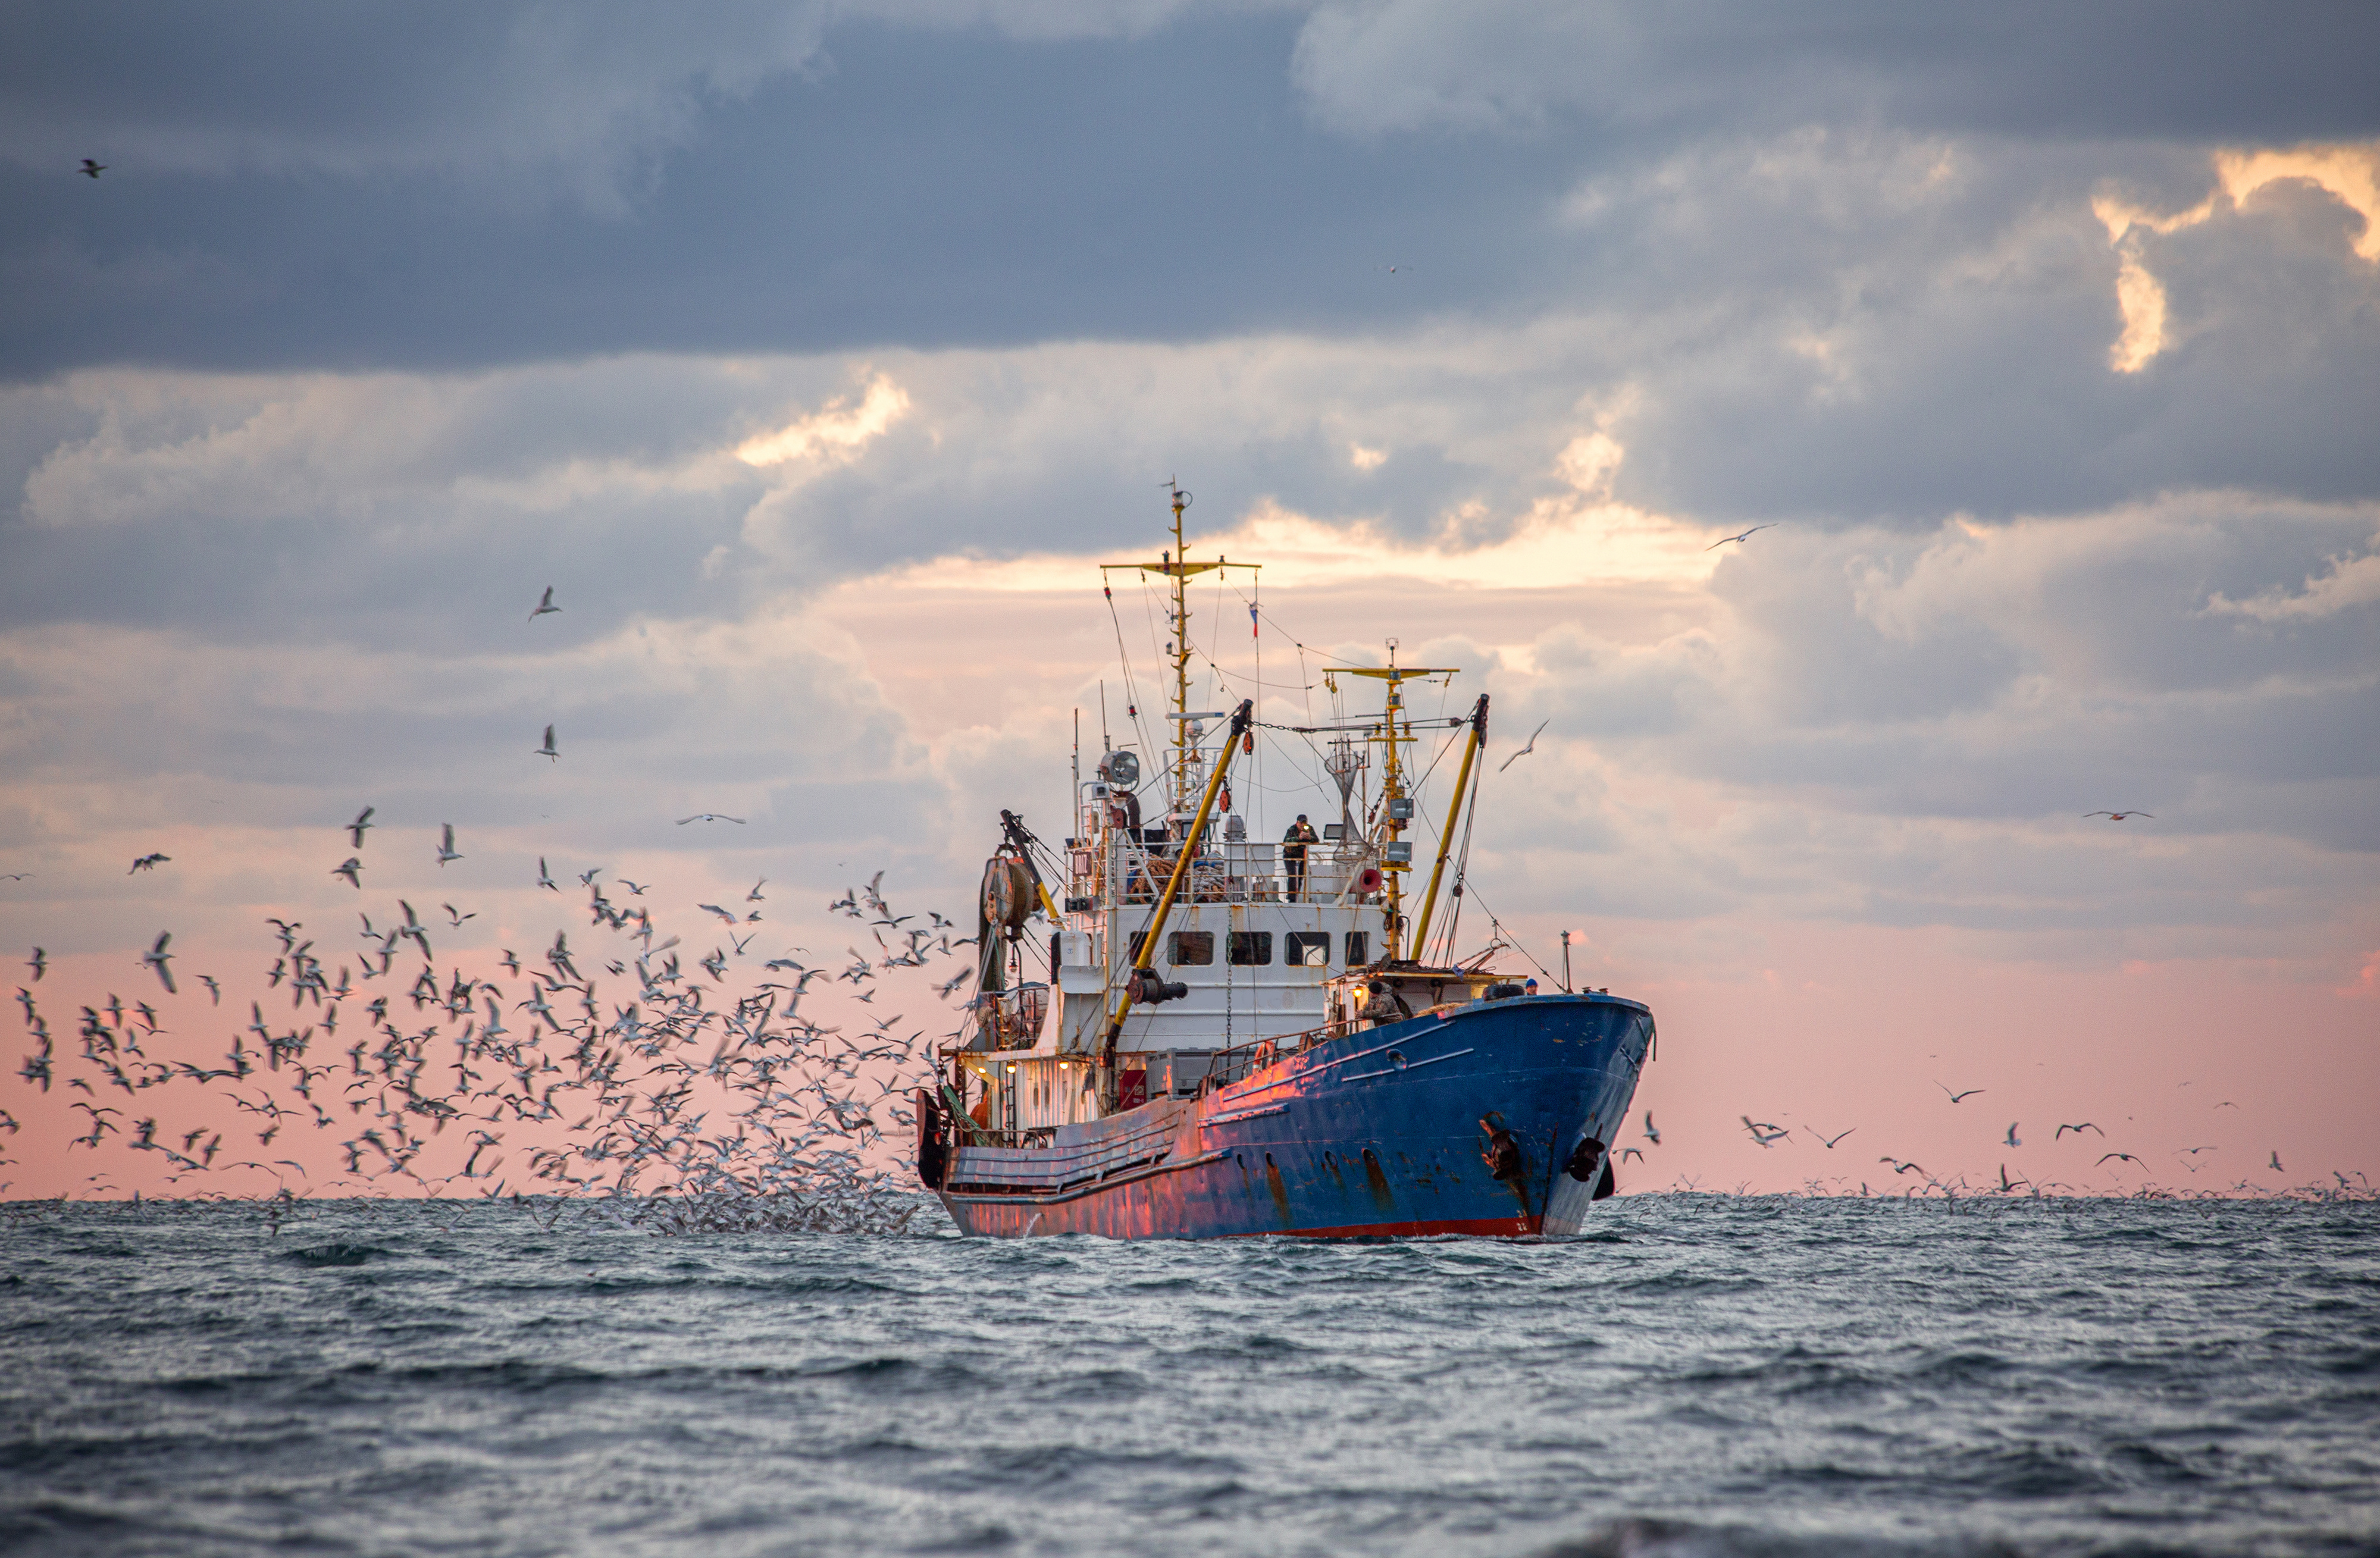 La pêche au chalut est un désastre écologique, tant sur le plan social qu’environnemental. © Анна Костенко, Adobe Stock